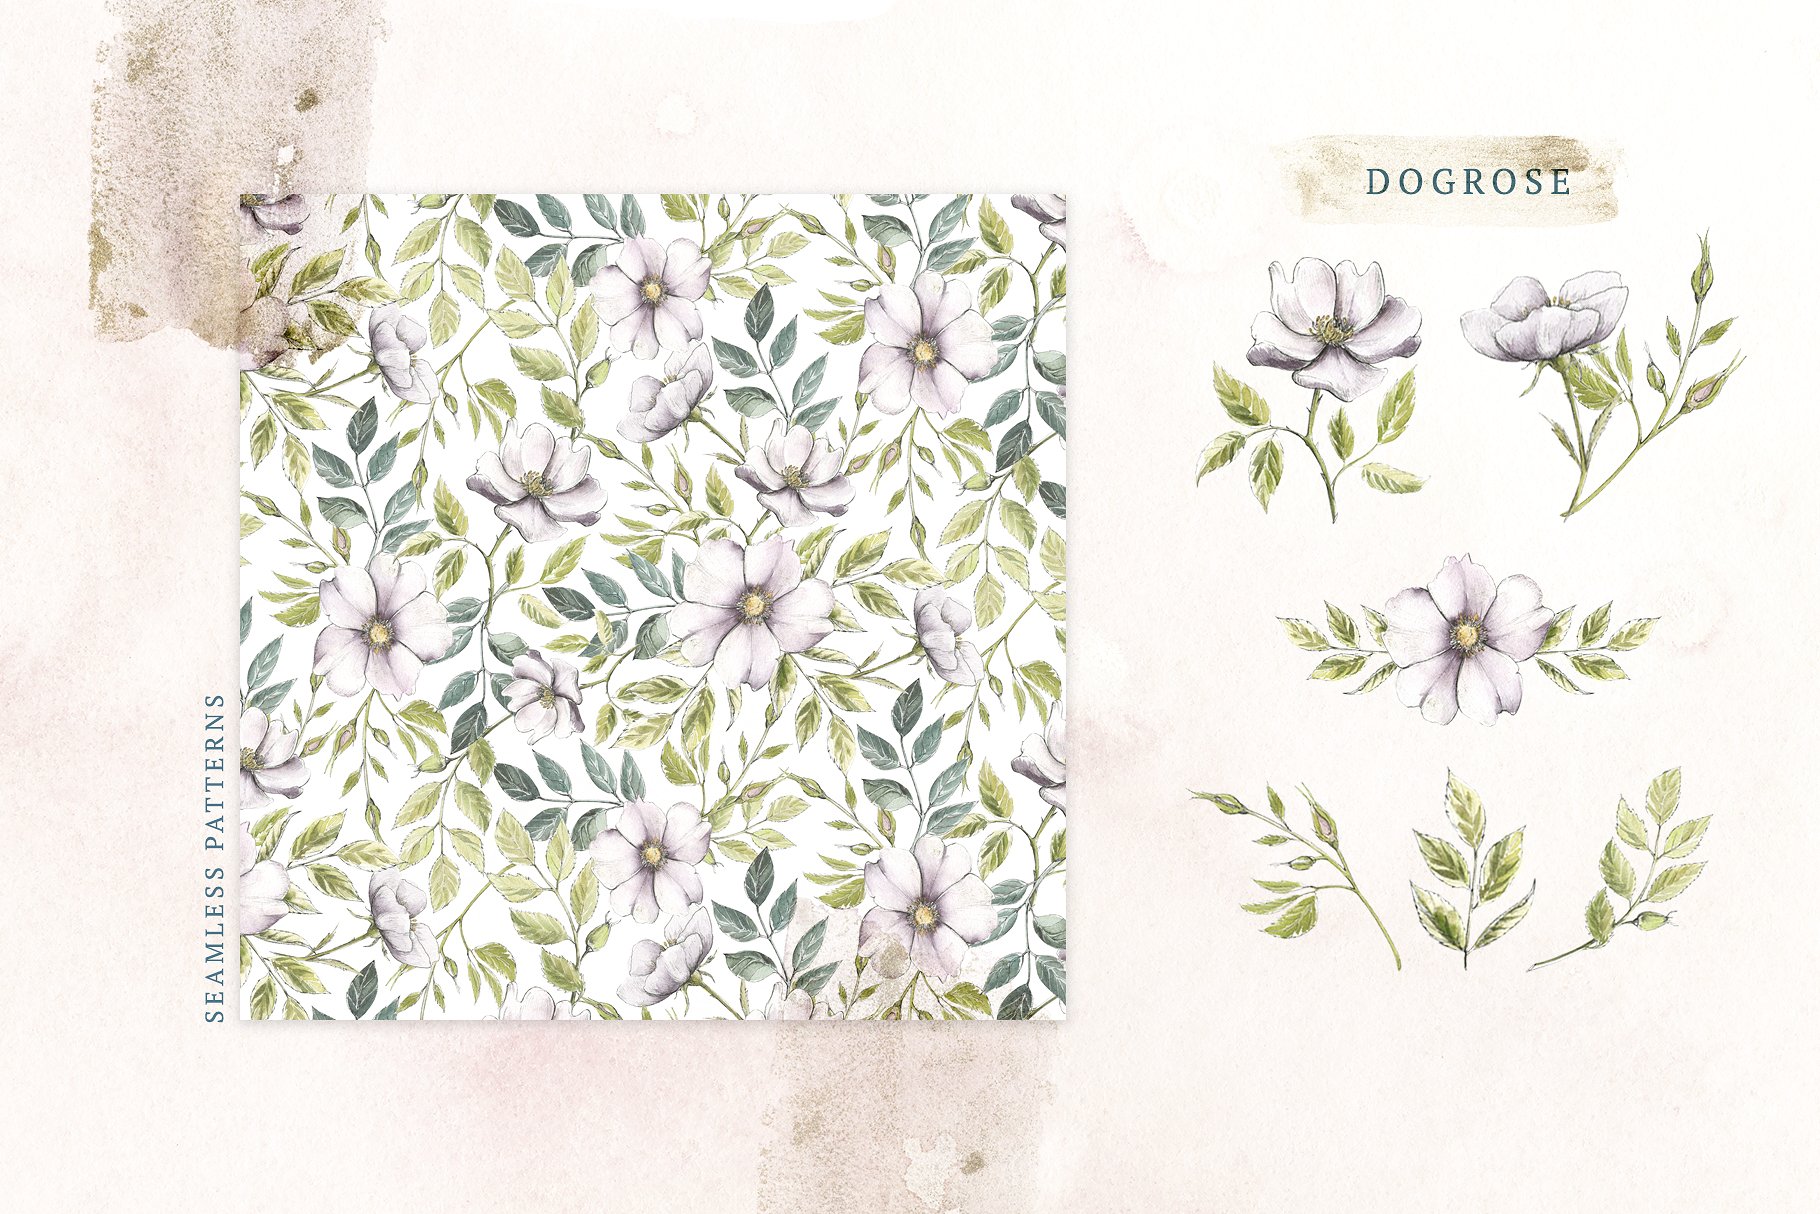 极力推荐：花卉图案纹理集合 Floral Patterns Bundle Vol.2 [3.45GB, 超过120款图案]插图(20)